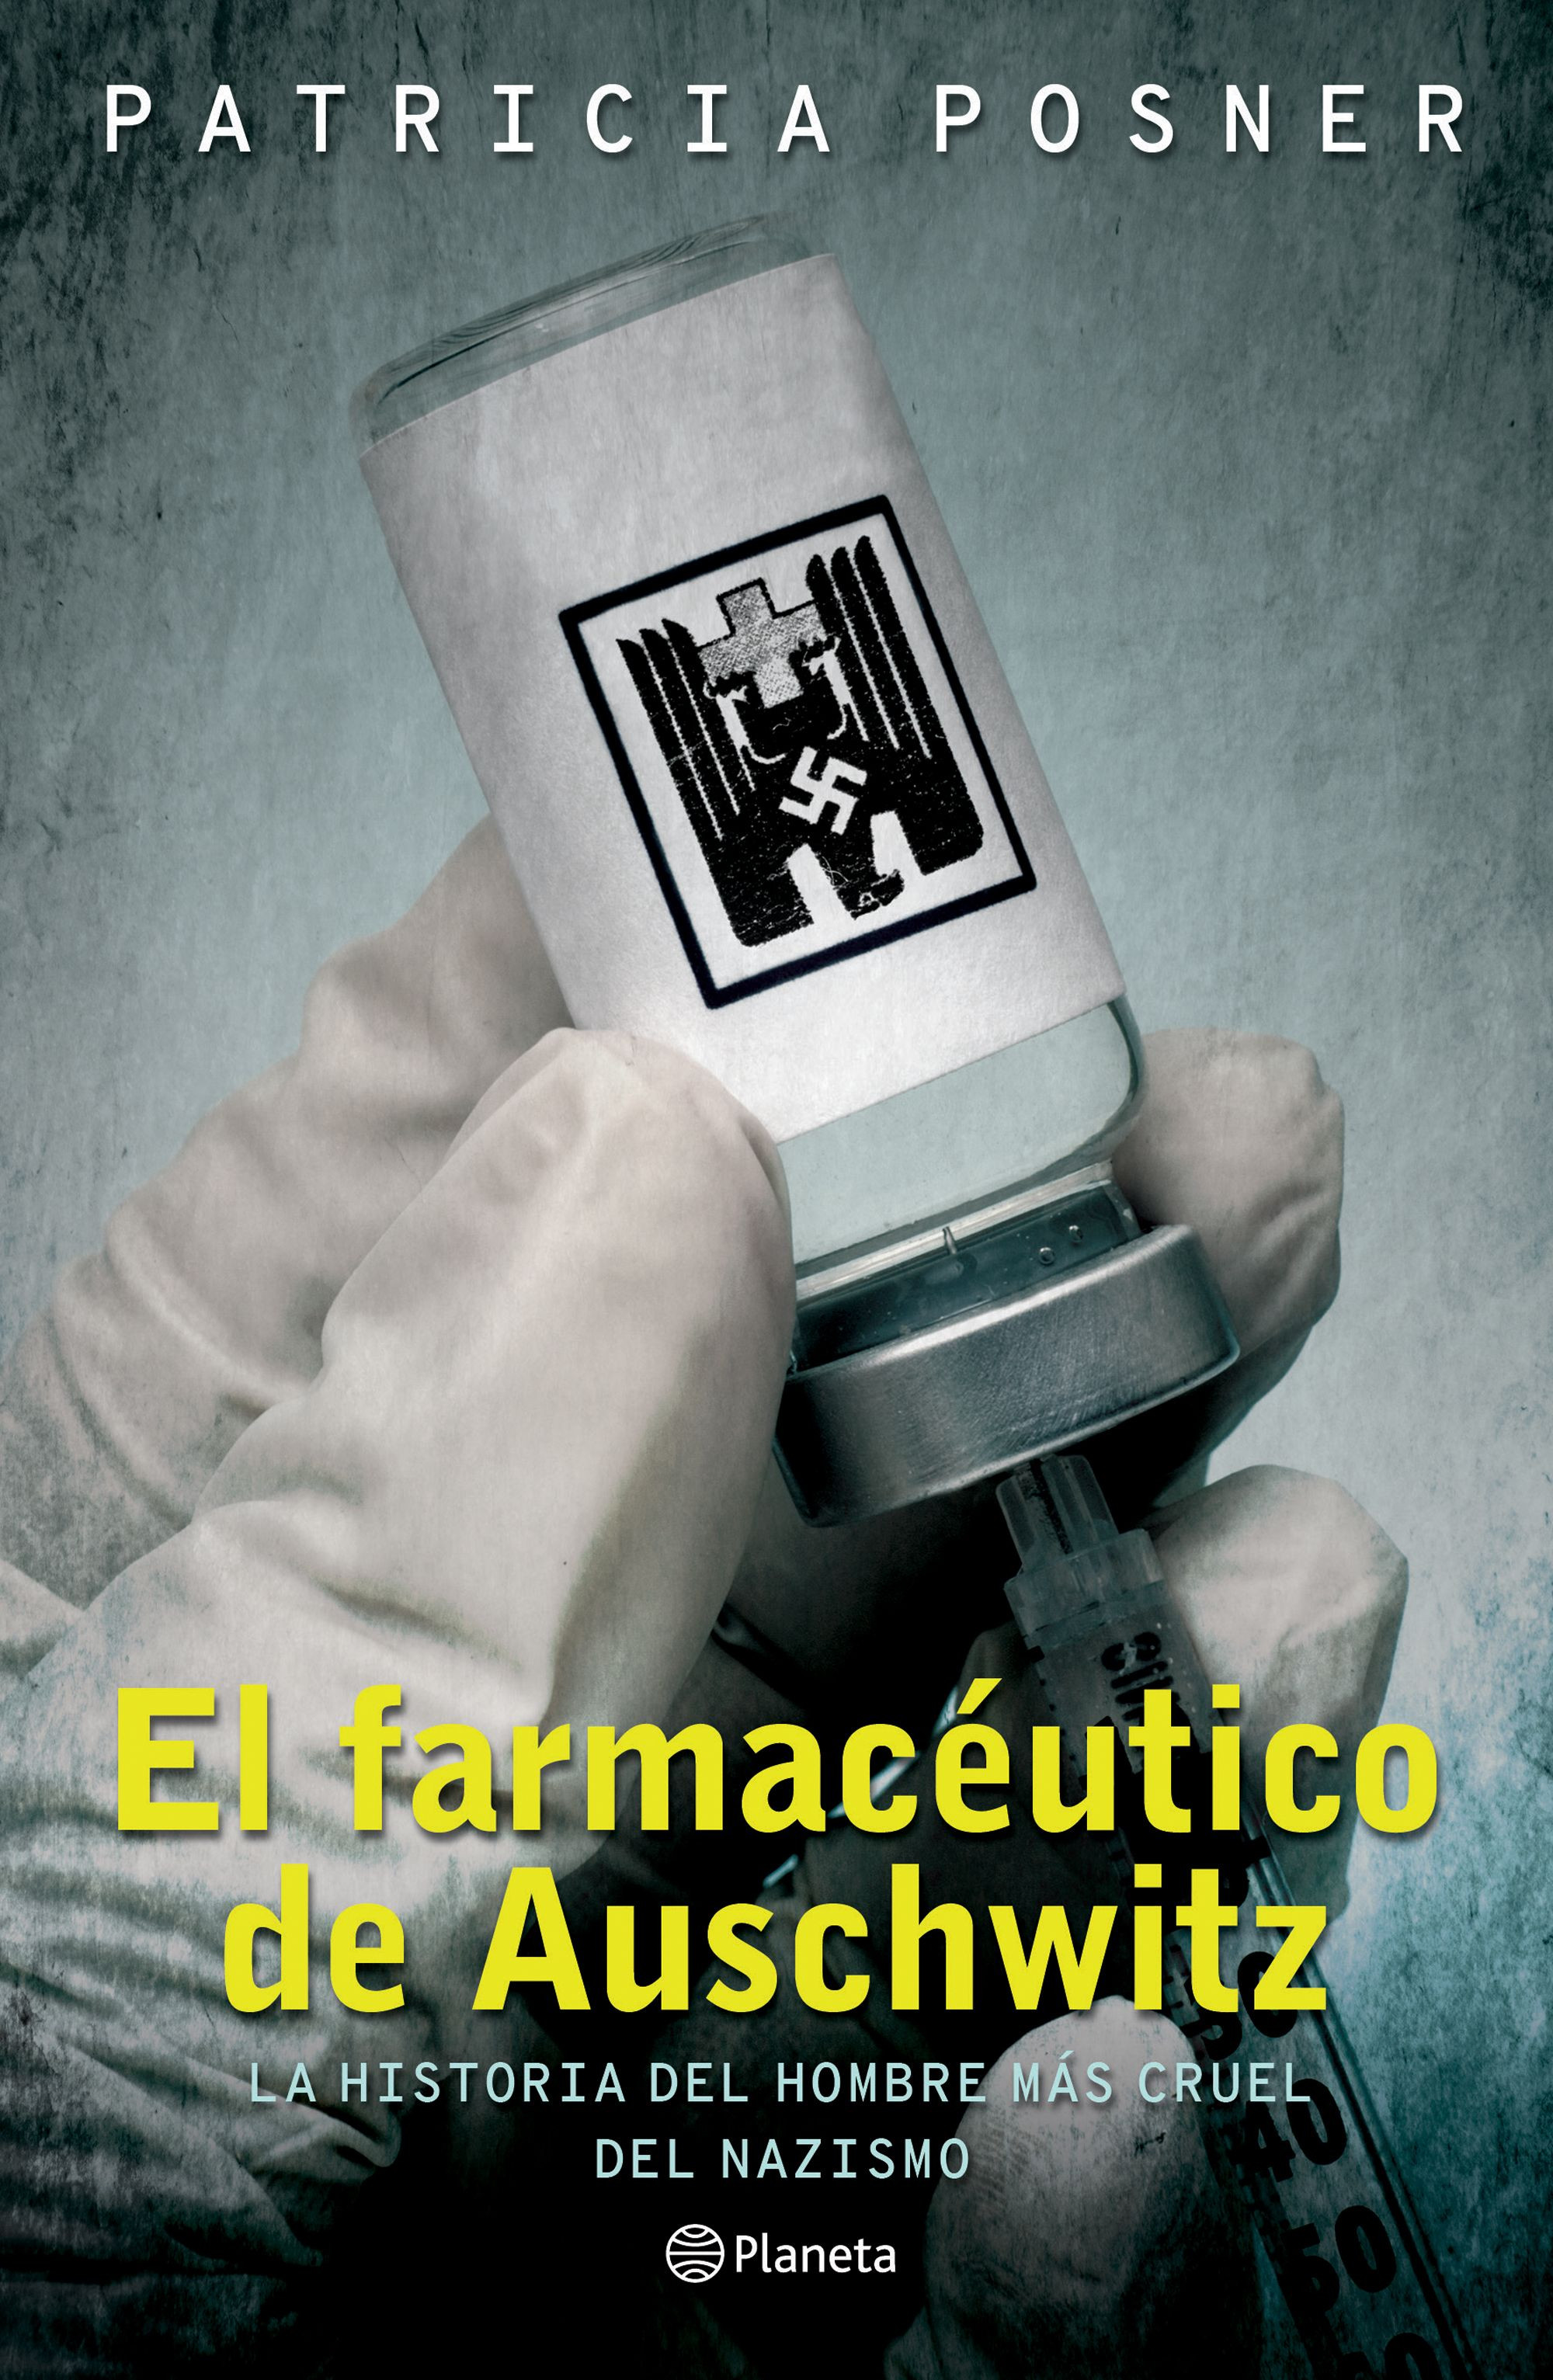 Imagen El Farmacéutico de Auschwitz. Patricia Posner 1